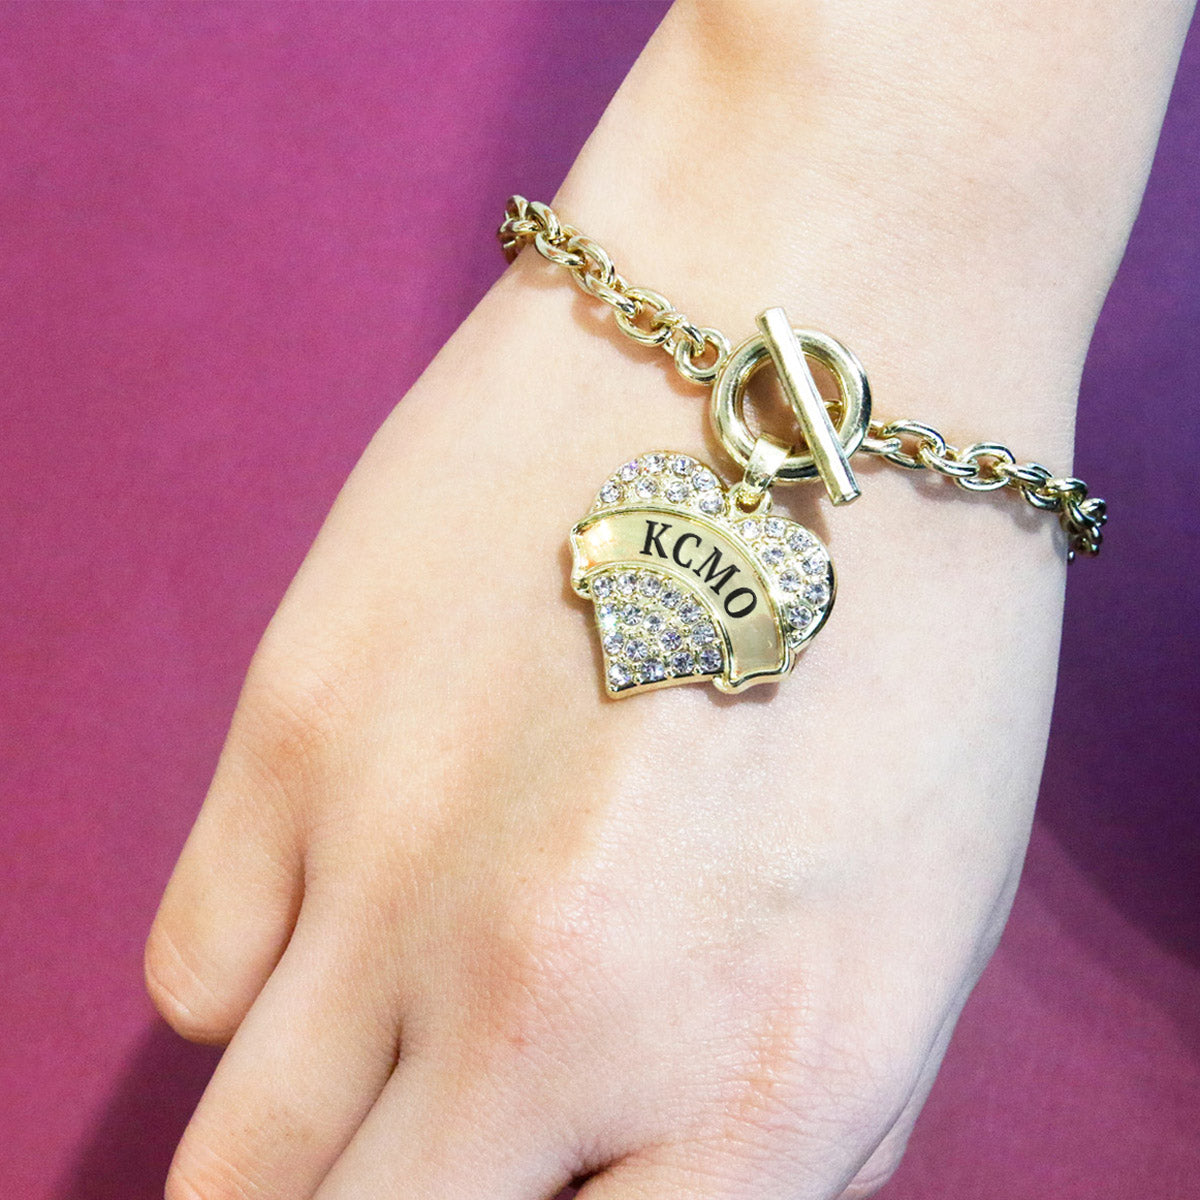 Gold KCMO Pave Heart Charm Toggle Bracelet